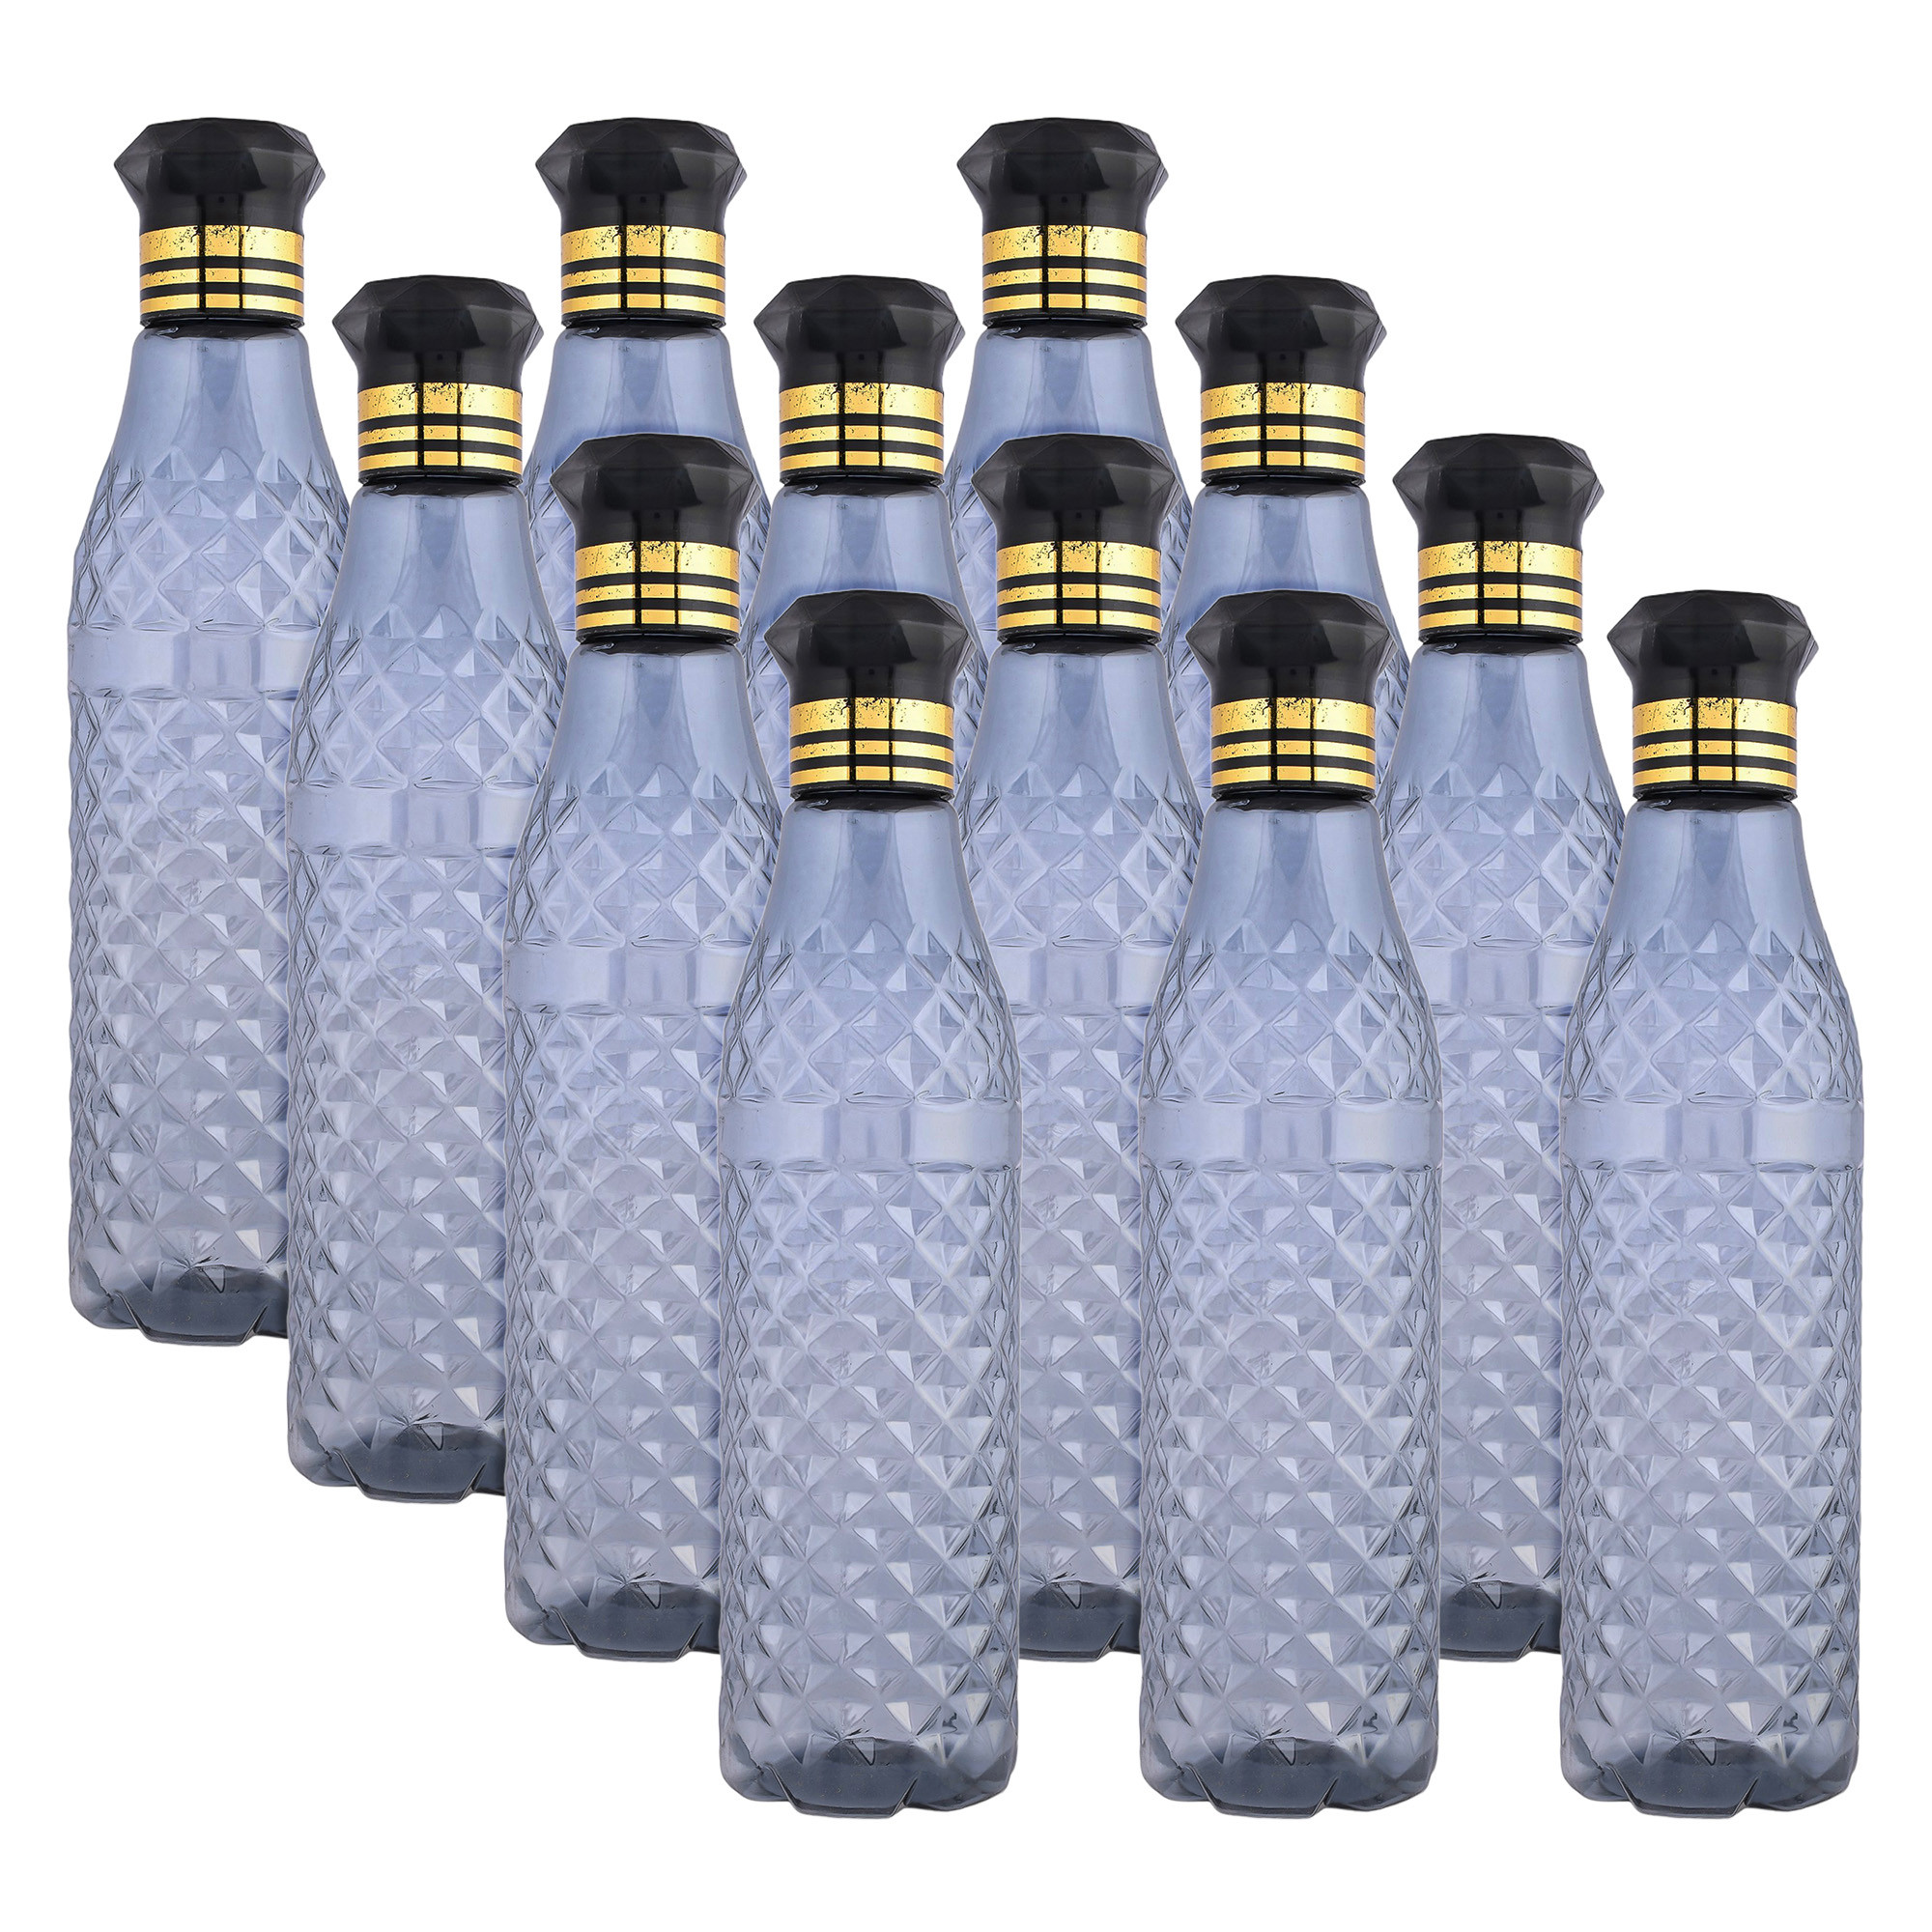 Kuber Industries Water Bottle | Plastic Water Bottle for Fridge | Water Bottle for Kitchen | Ideal for Restaurant | Water Bottle for Refrigerator | Crystal Bingo Bottle | 1 LTR |Black